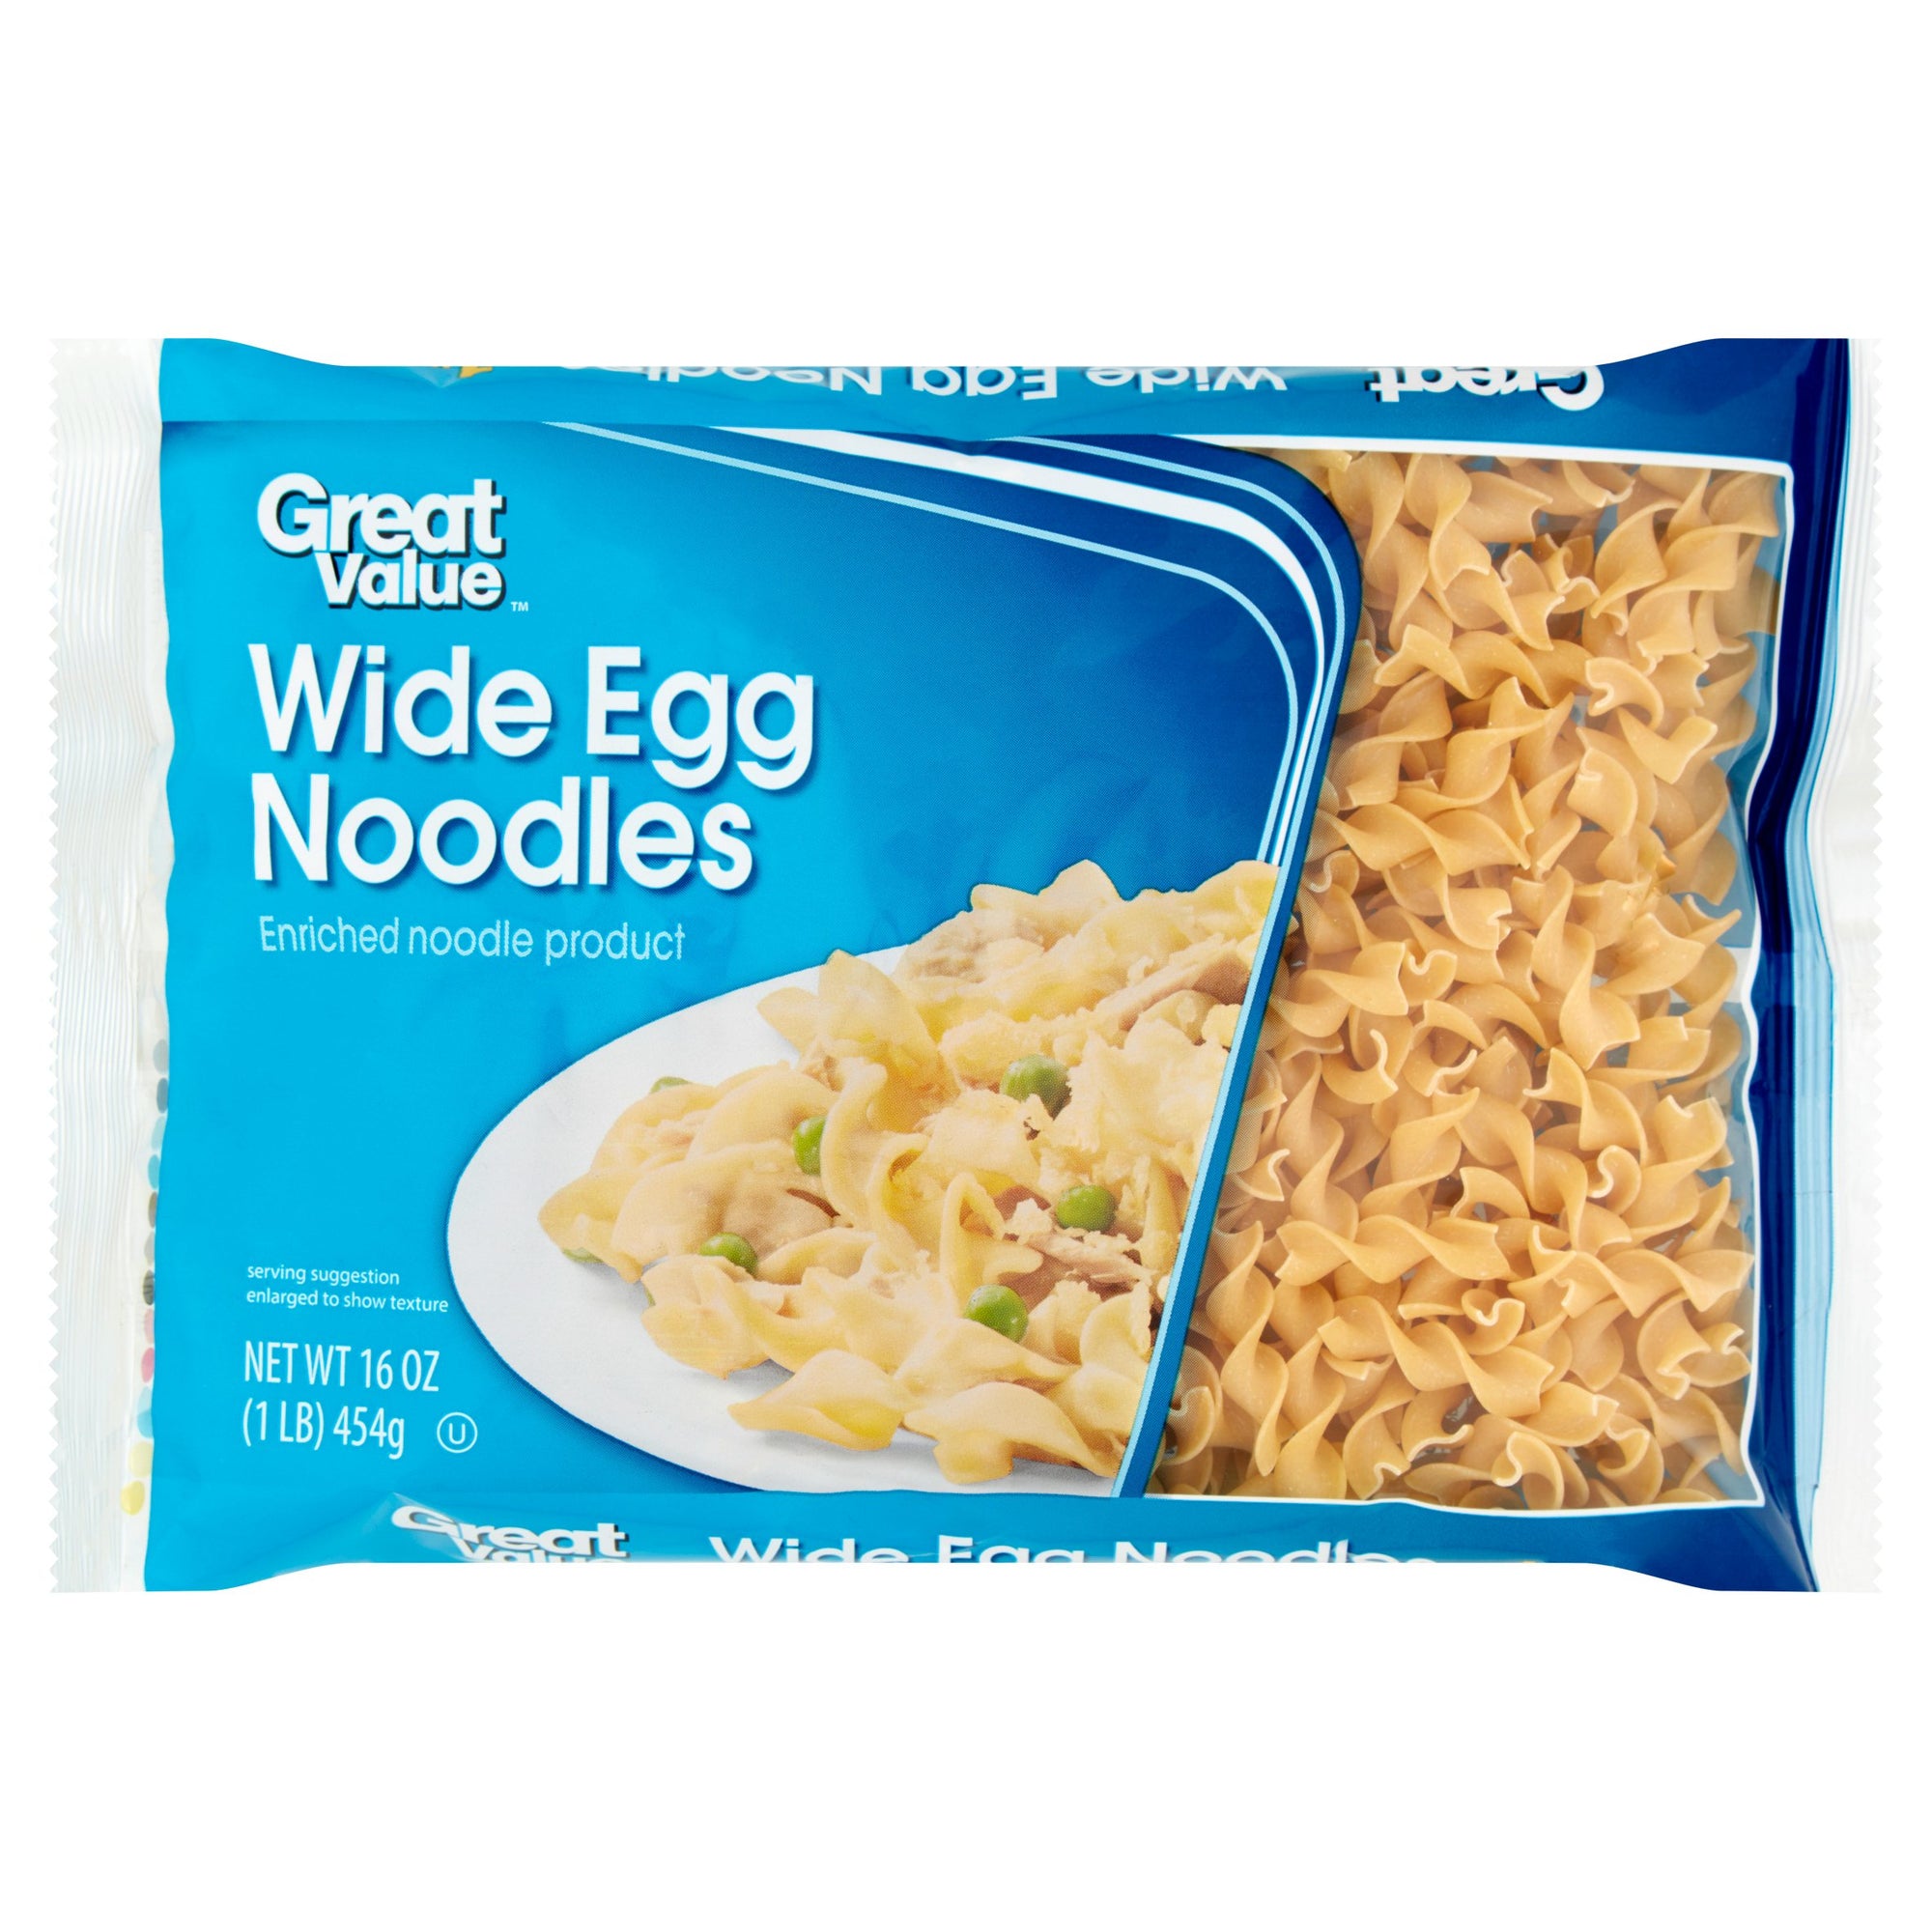 Great Value Wide Egg Noodles